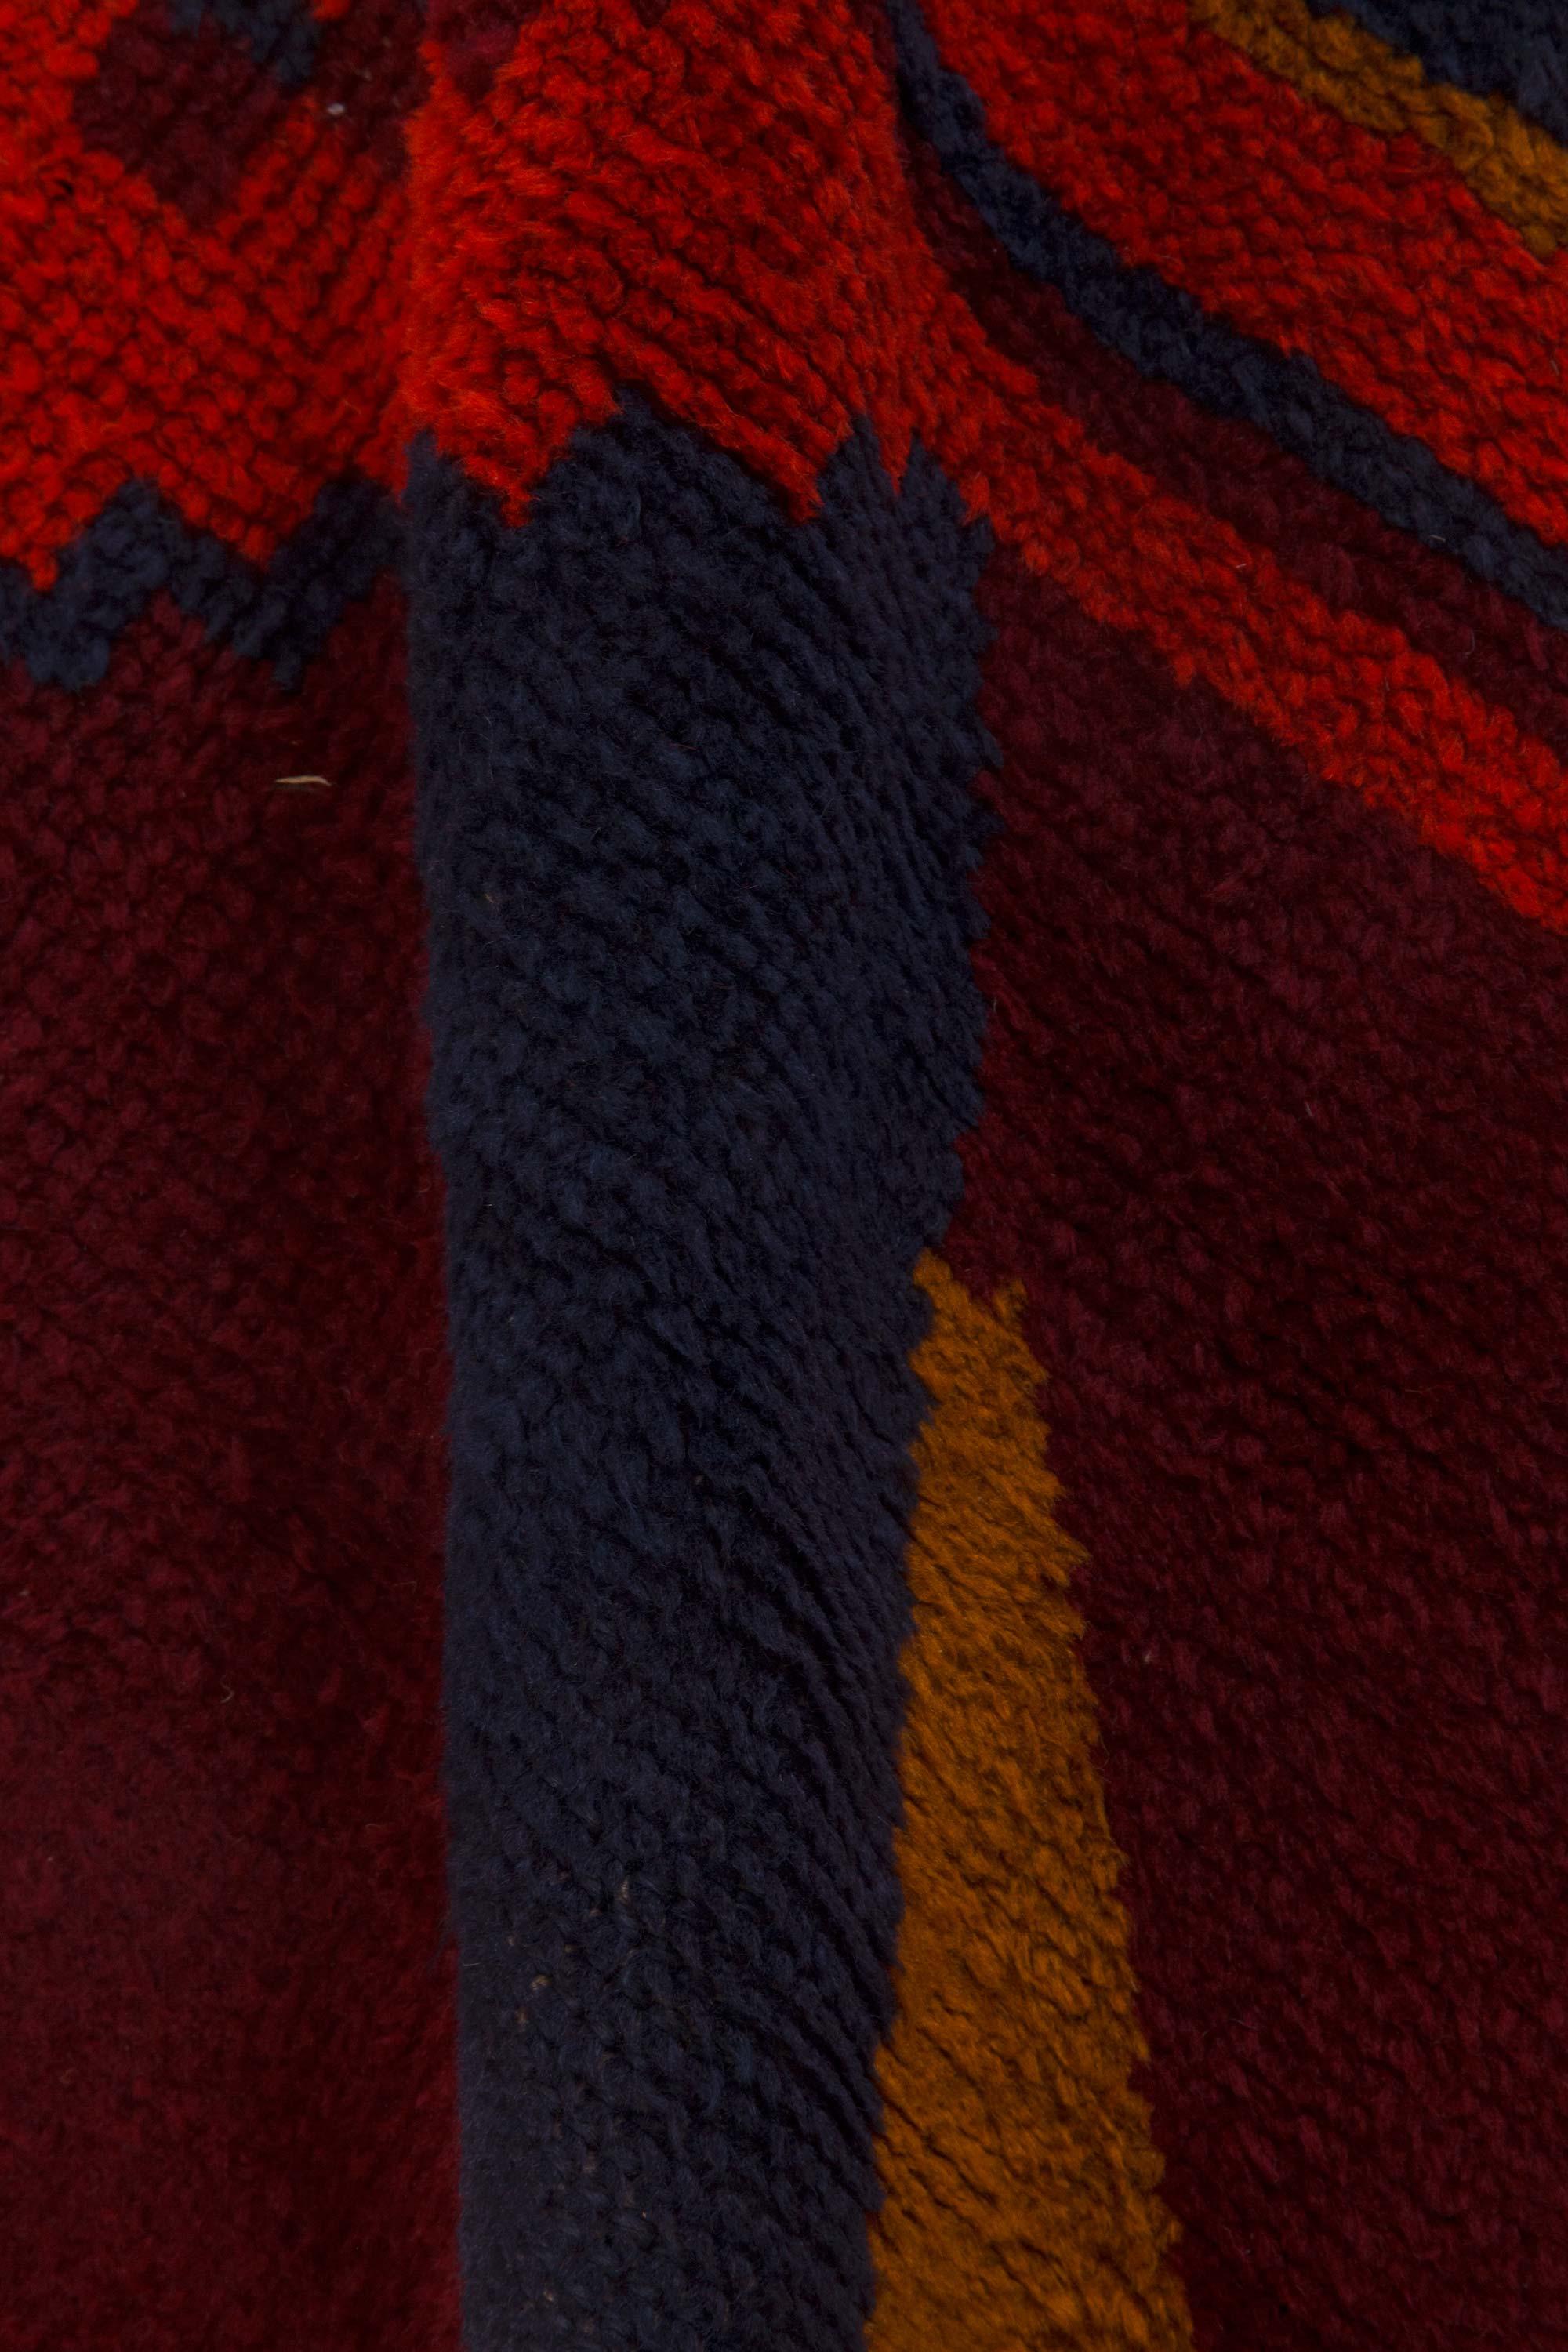 Vintage Art Deco red handmade wool rug.
Size: 9'5